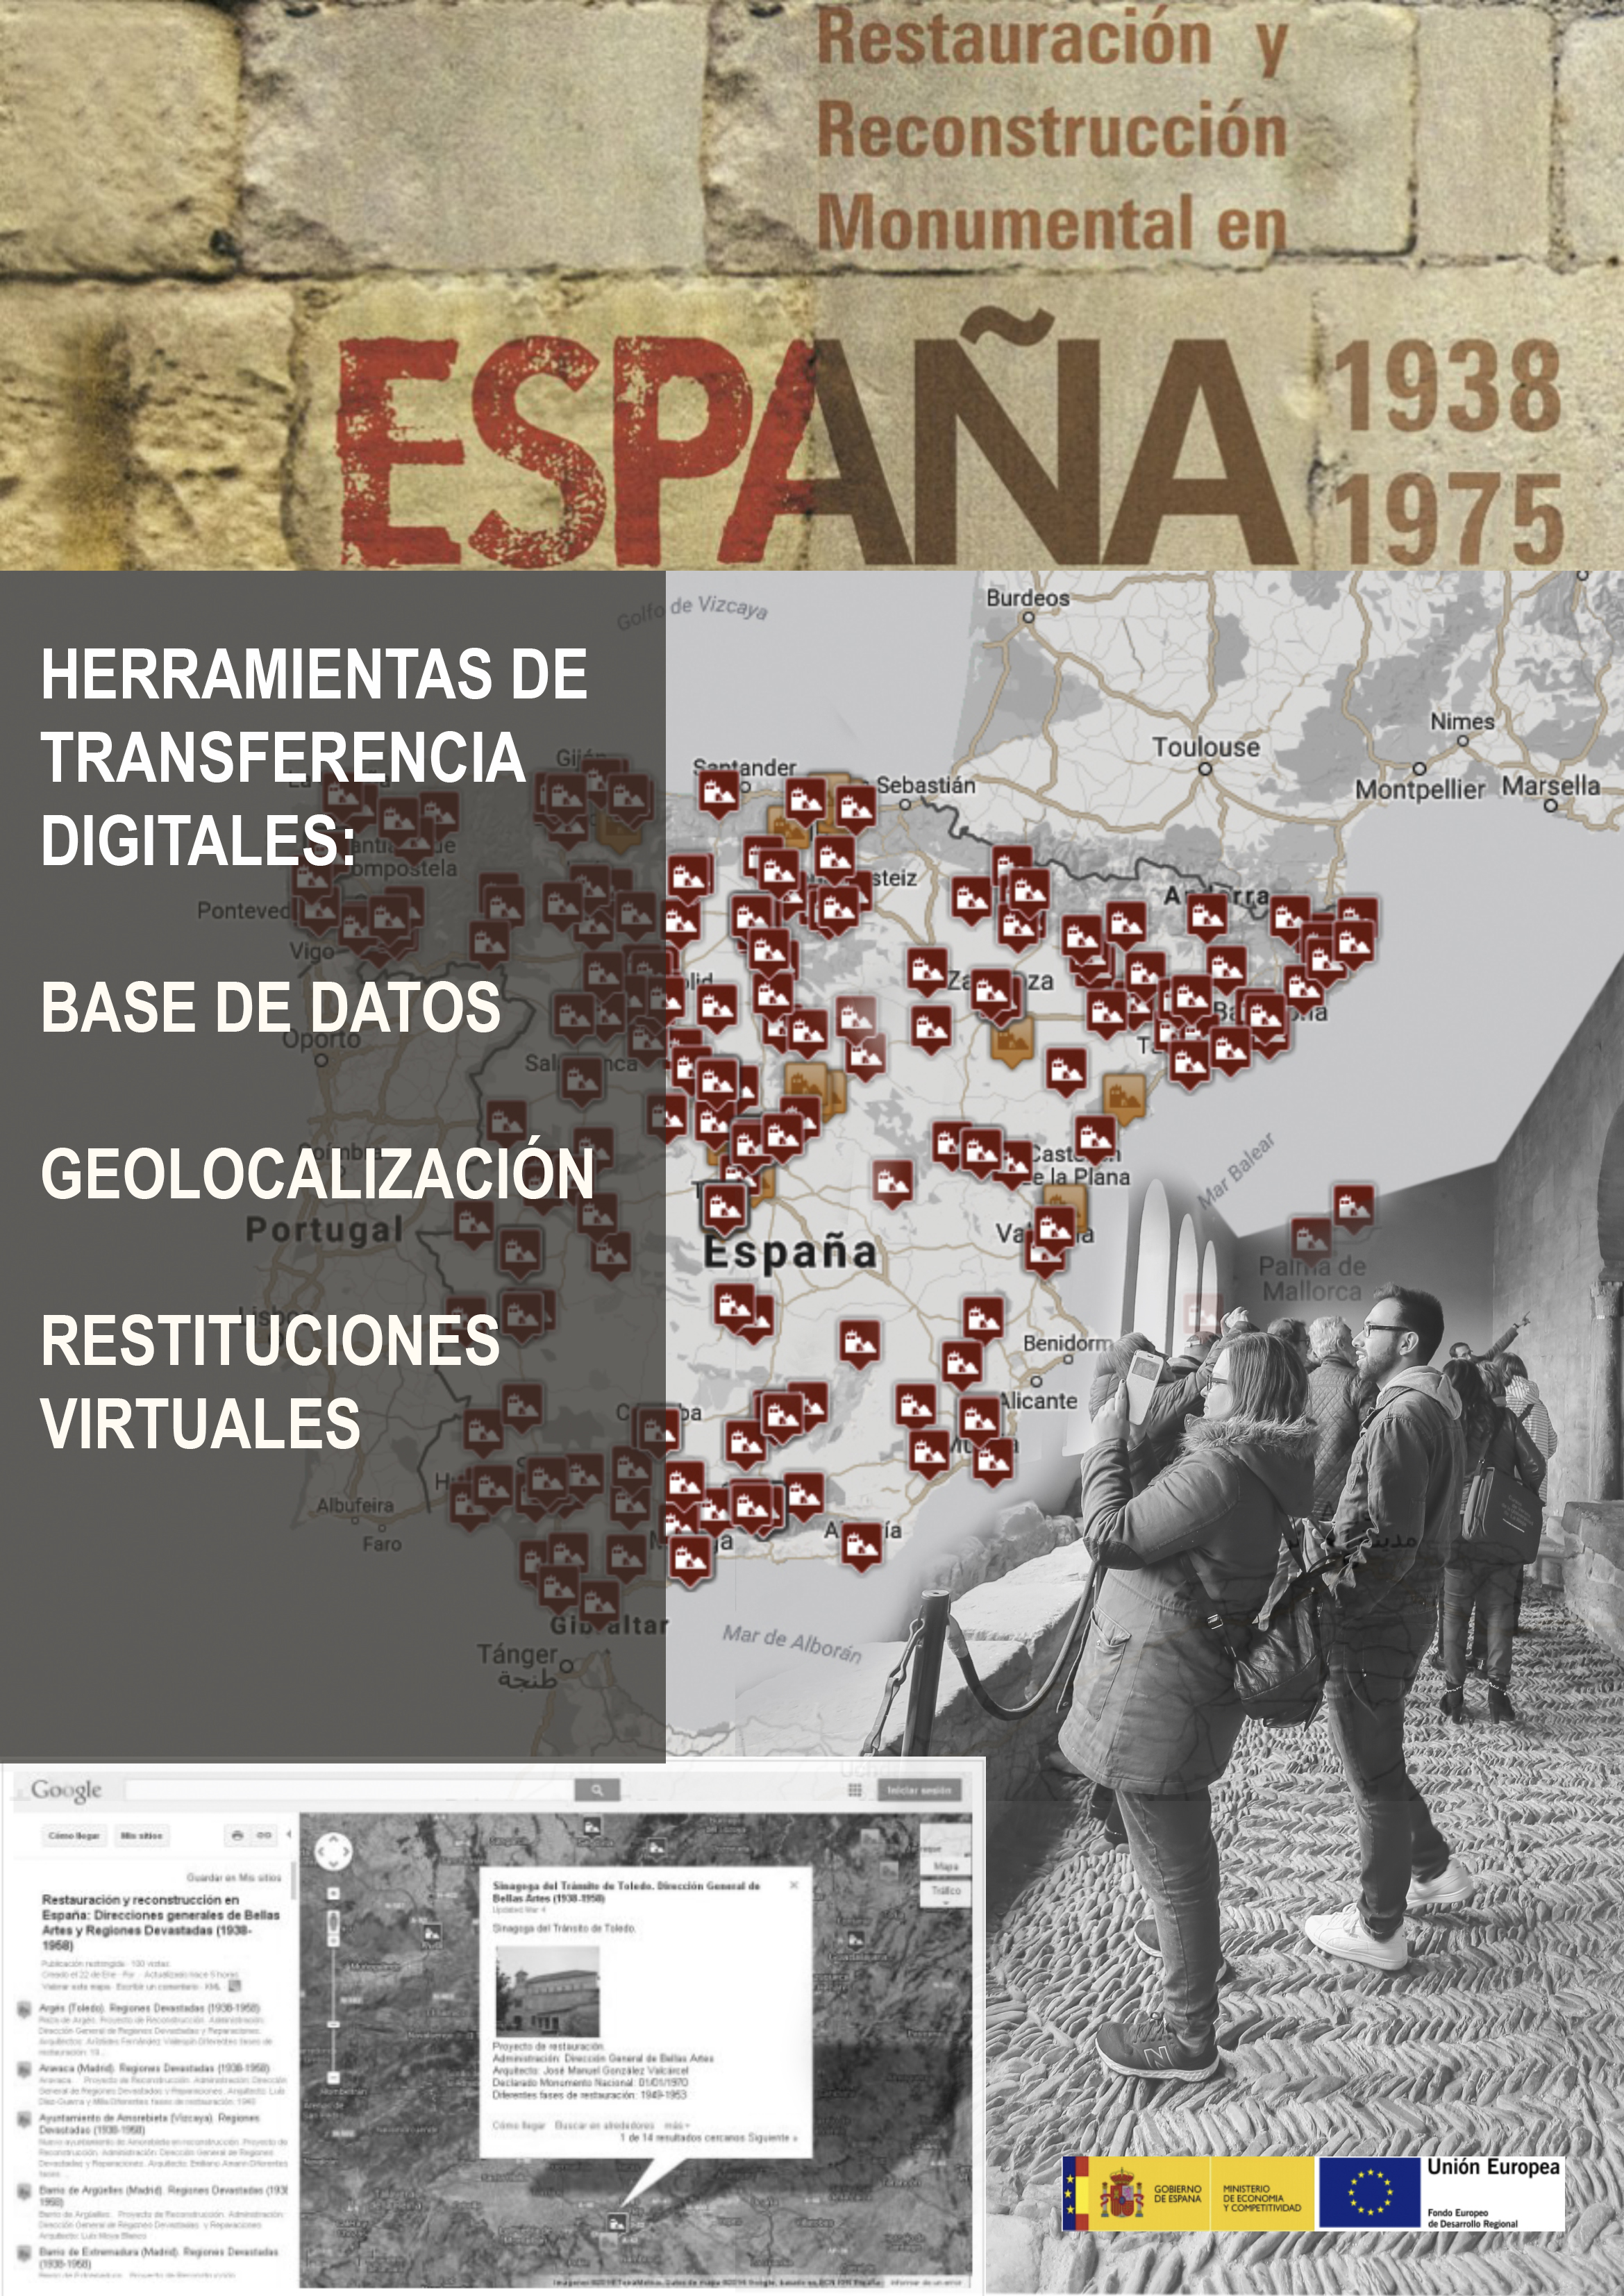 Herramientas digitales de transferencia de la investigación del proyecto Los Arquitectos Restauradores en la España del Franquismo